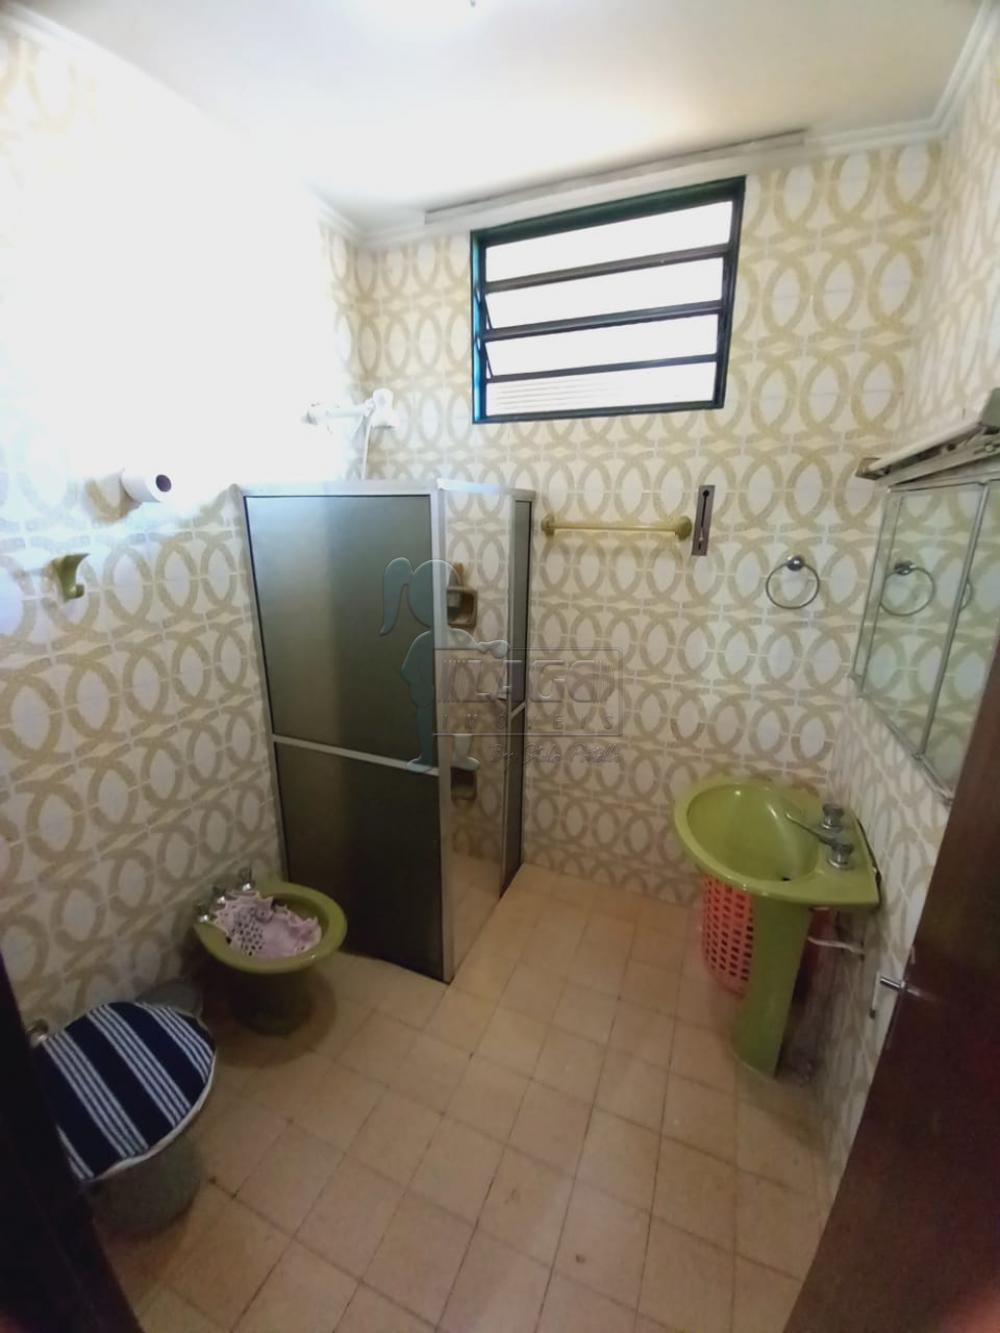 Comprar Casas / Padrão em Ribeirão Preto R$ 350.000,00 - Foto 10